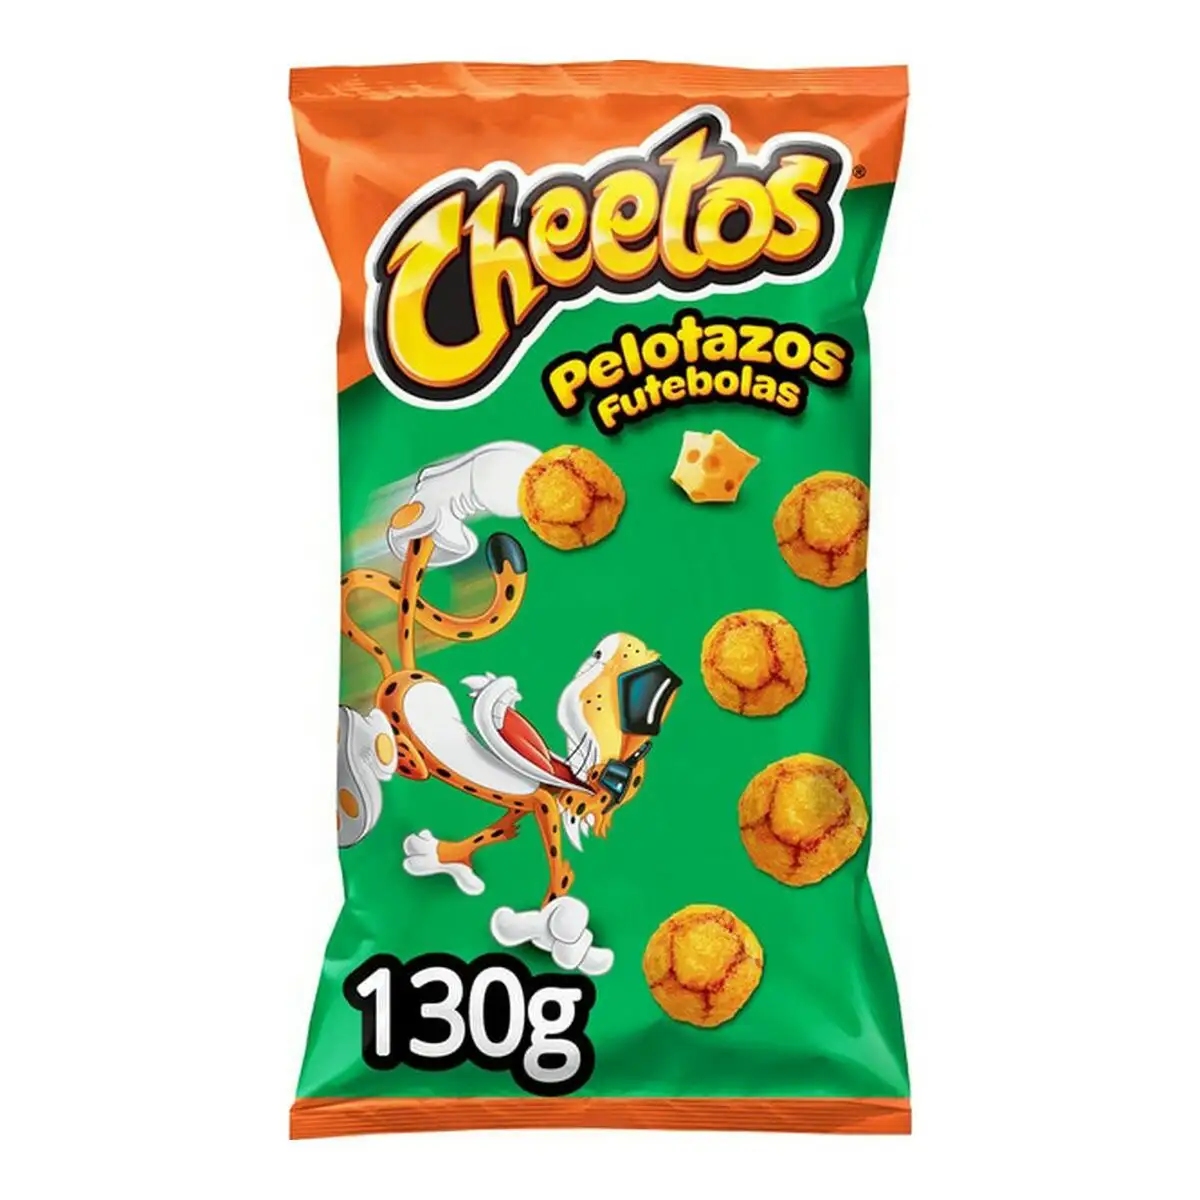 Snacks cheetos pelotazos fromage 130 g_6659. DIAYTAR SENEGAL - Là où Chaque Clic Compte. Parcourez notre boutique en ligne et laissez-vous guider vers des trouvailles uniques qui enrichiront votre quotidien.